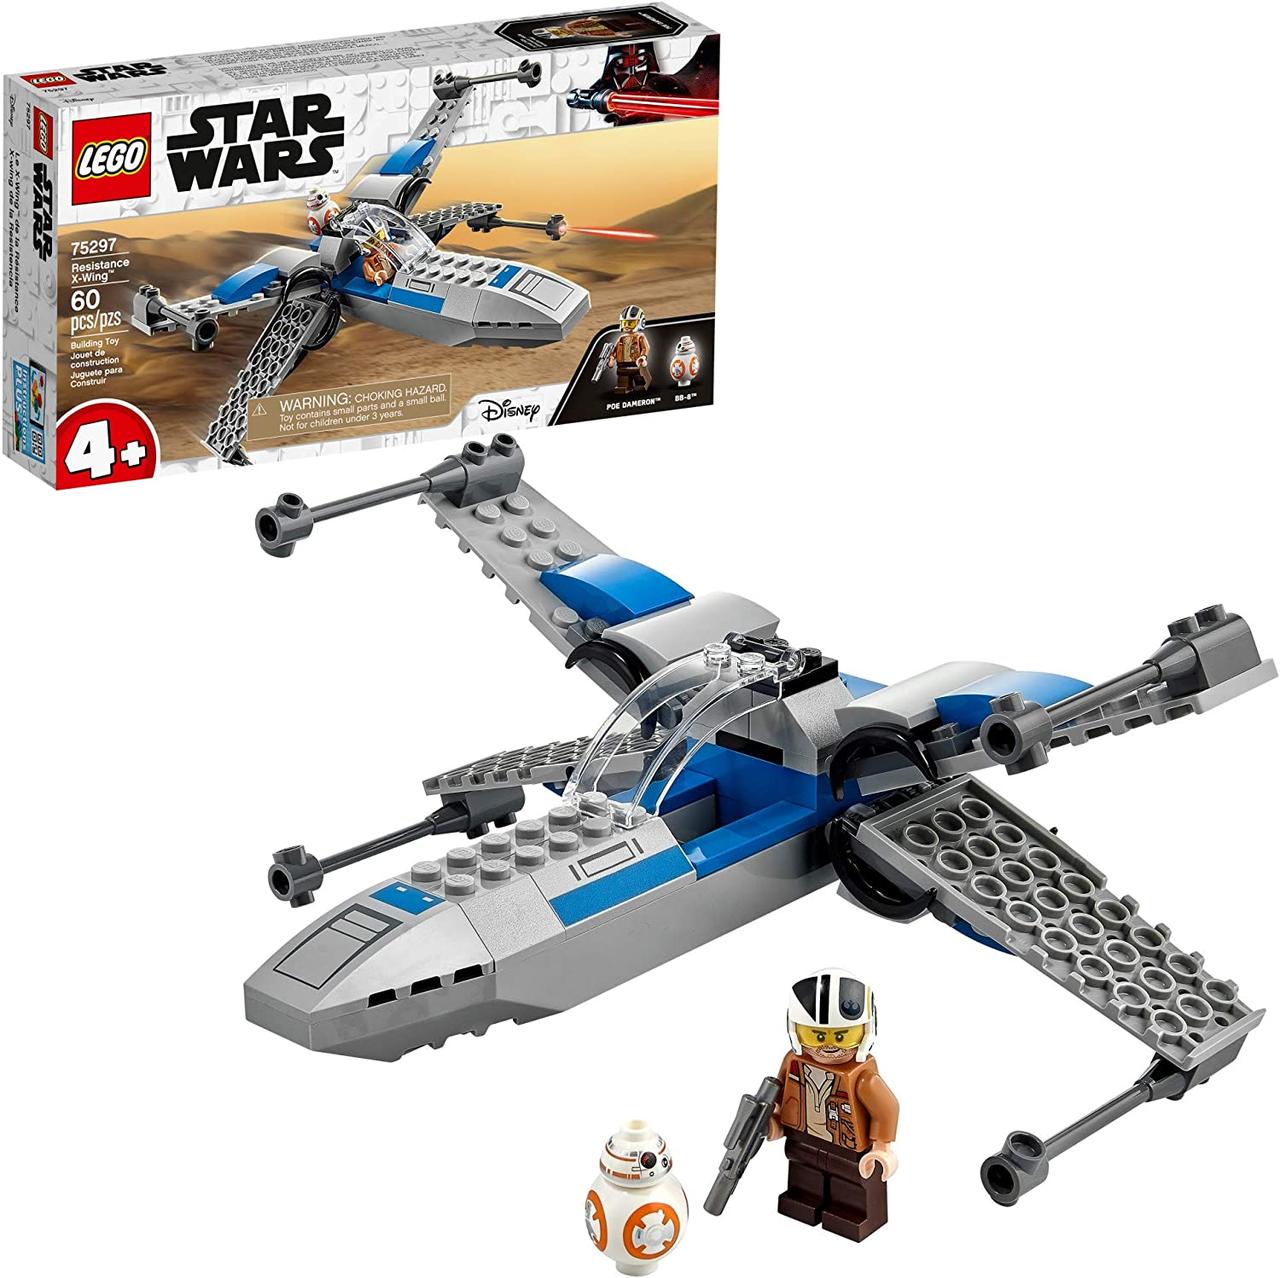 Лего Звездные войны Истребитель Сопротивления типа X Lego Star Wars 75